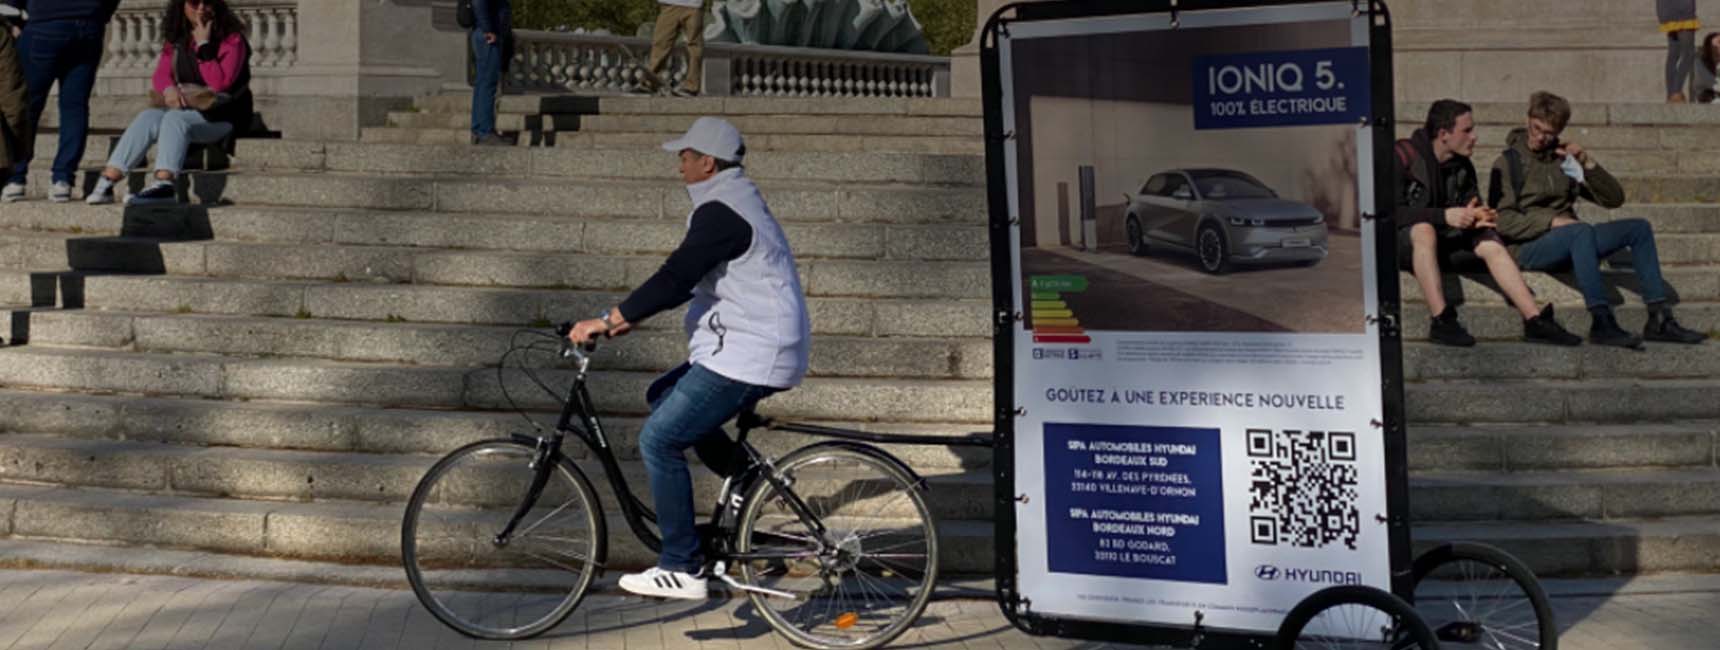 Opération affichage mobile avec le Bike'Com pour ioniq 5 - Keemia Bordeaux agence marketing locale en région Aquitaine